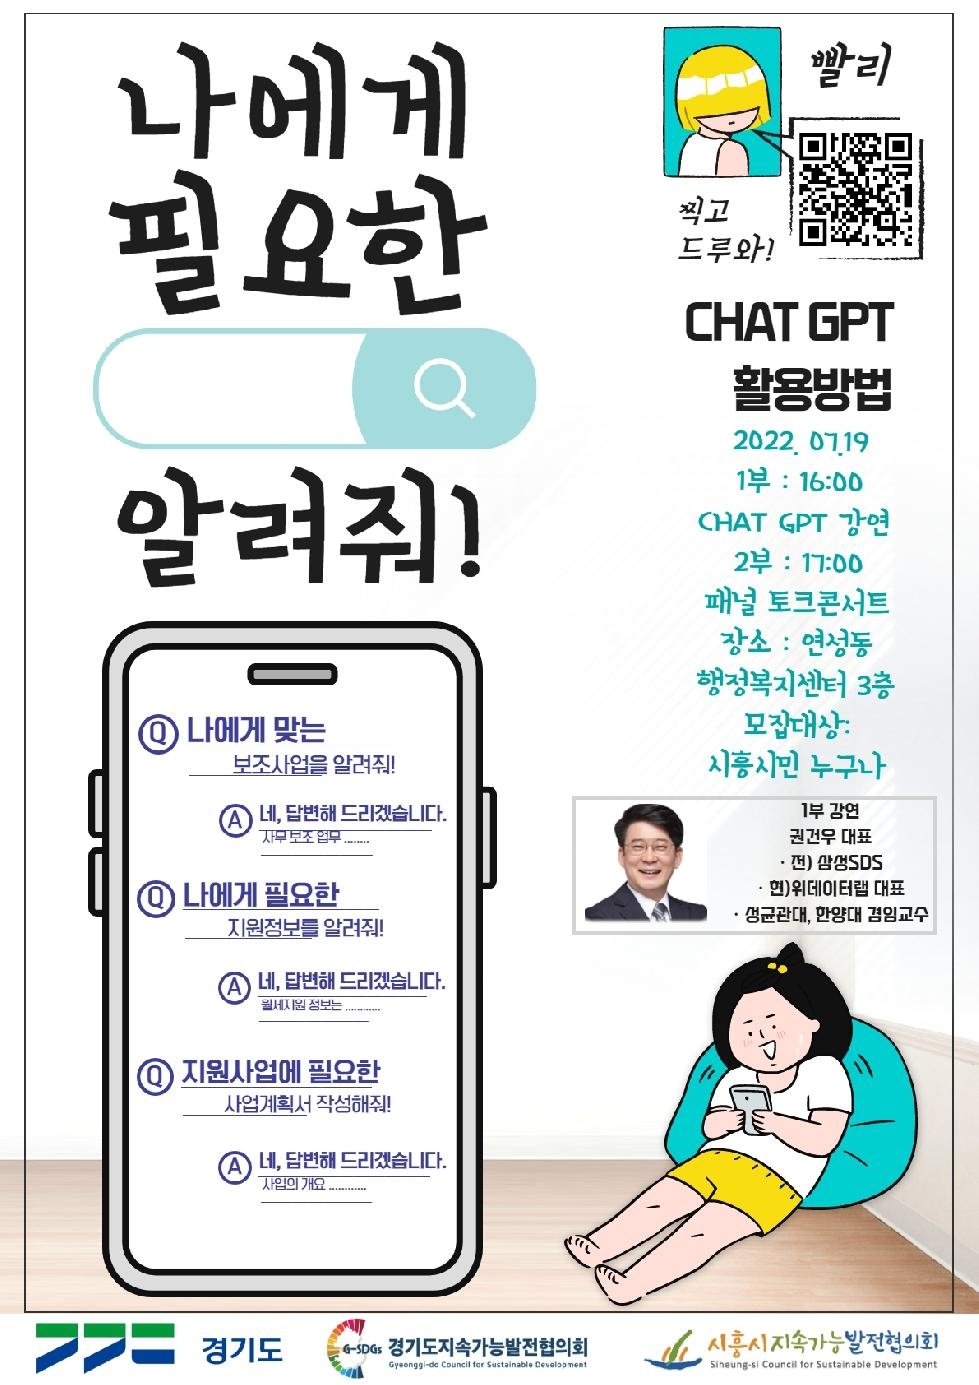 시흥시지속협, 대화형 인공지능 ‘챗 GPT 활용 특강’ 19일 개최